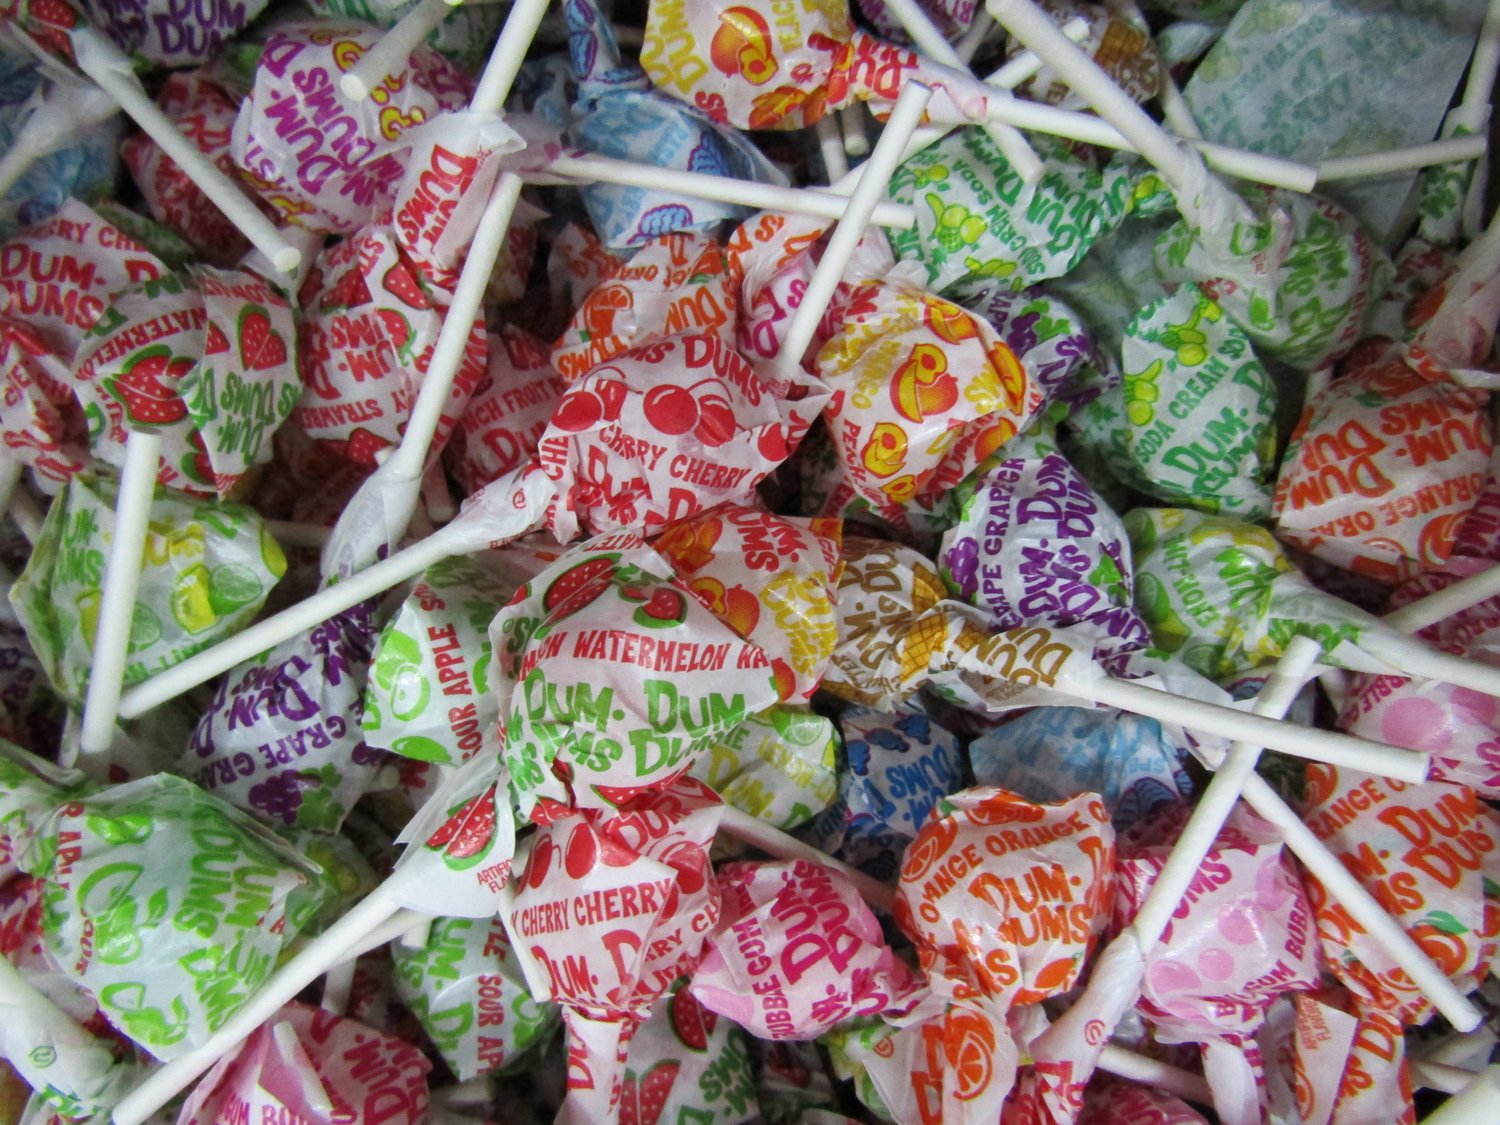 Dum Dums Lollipops